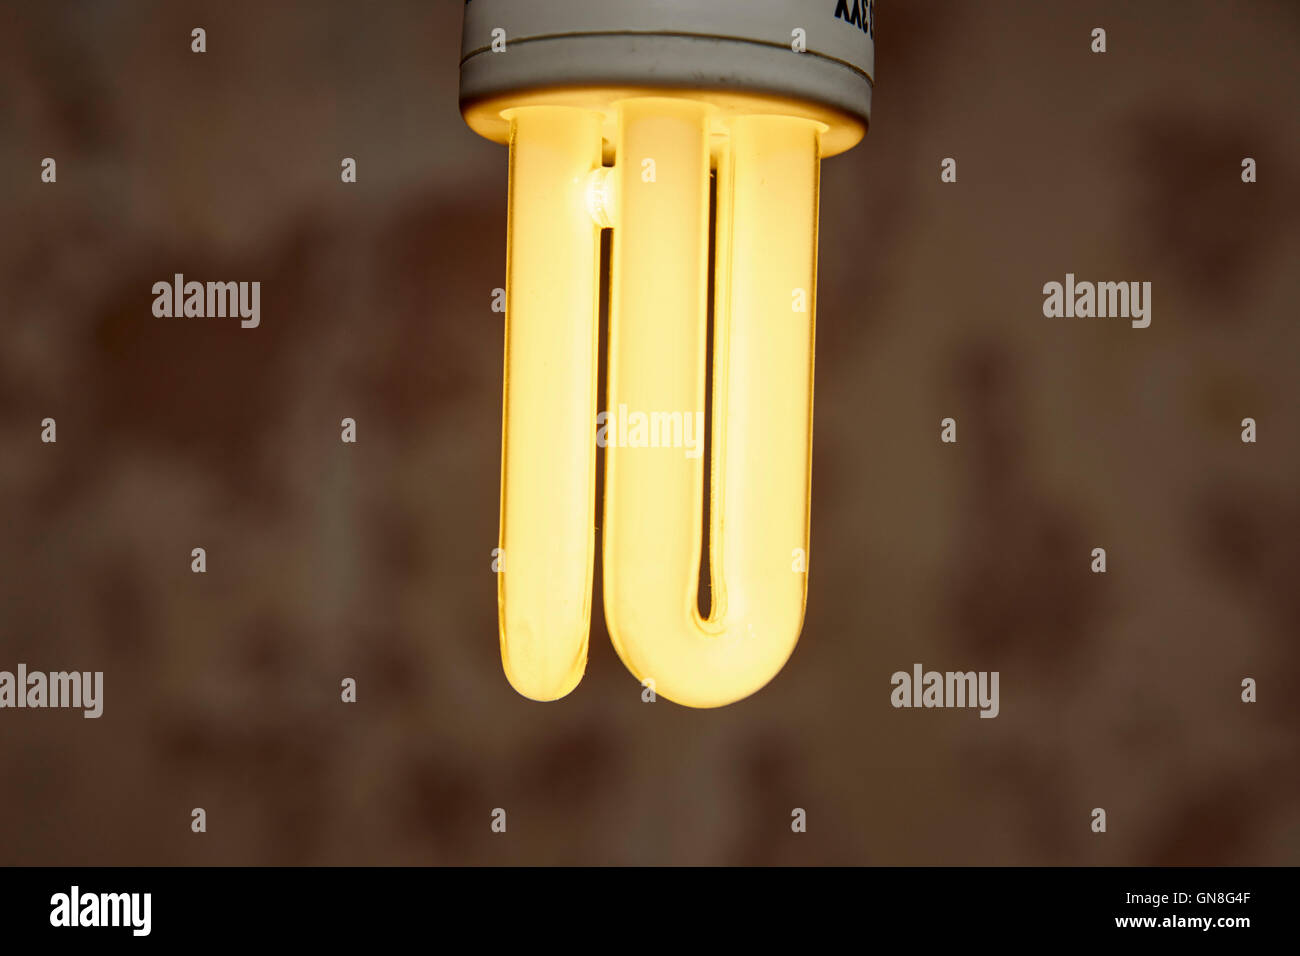 Cfl fluorescenti compatte a risparmio energetico per lampade Foto Stock